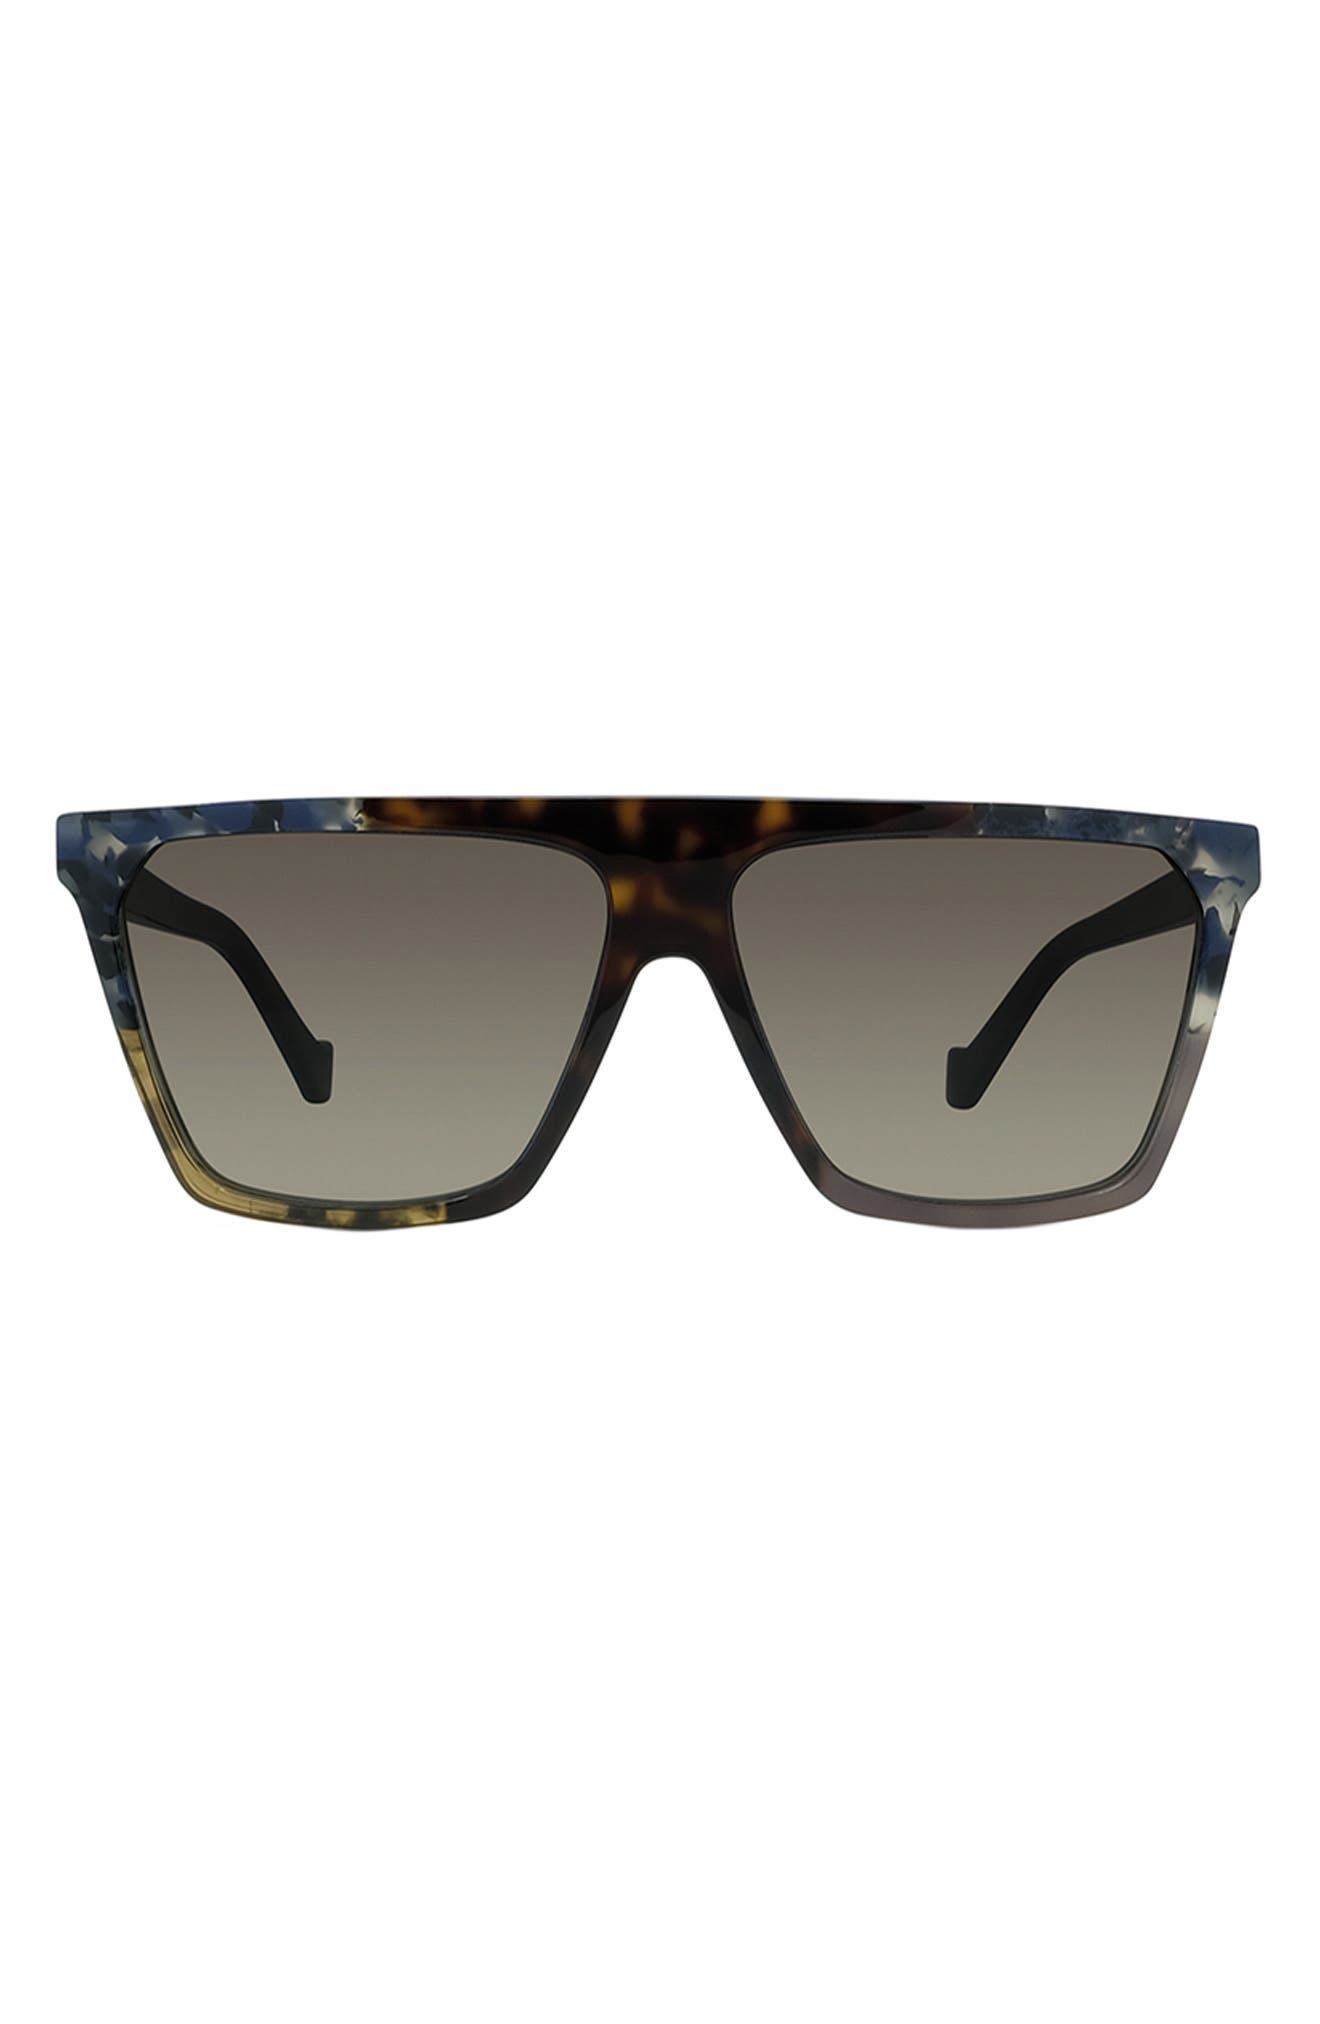 Loewe 60mm Flat Top Sunglasses in Dark Havana/Dark Brown at Nordstrom